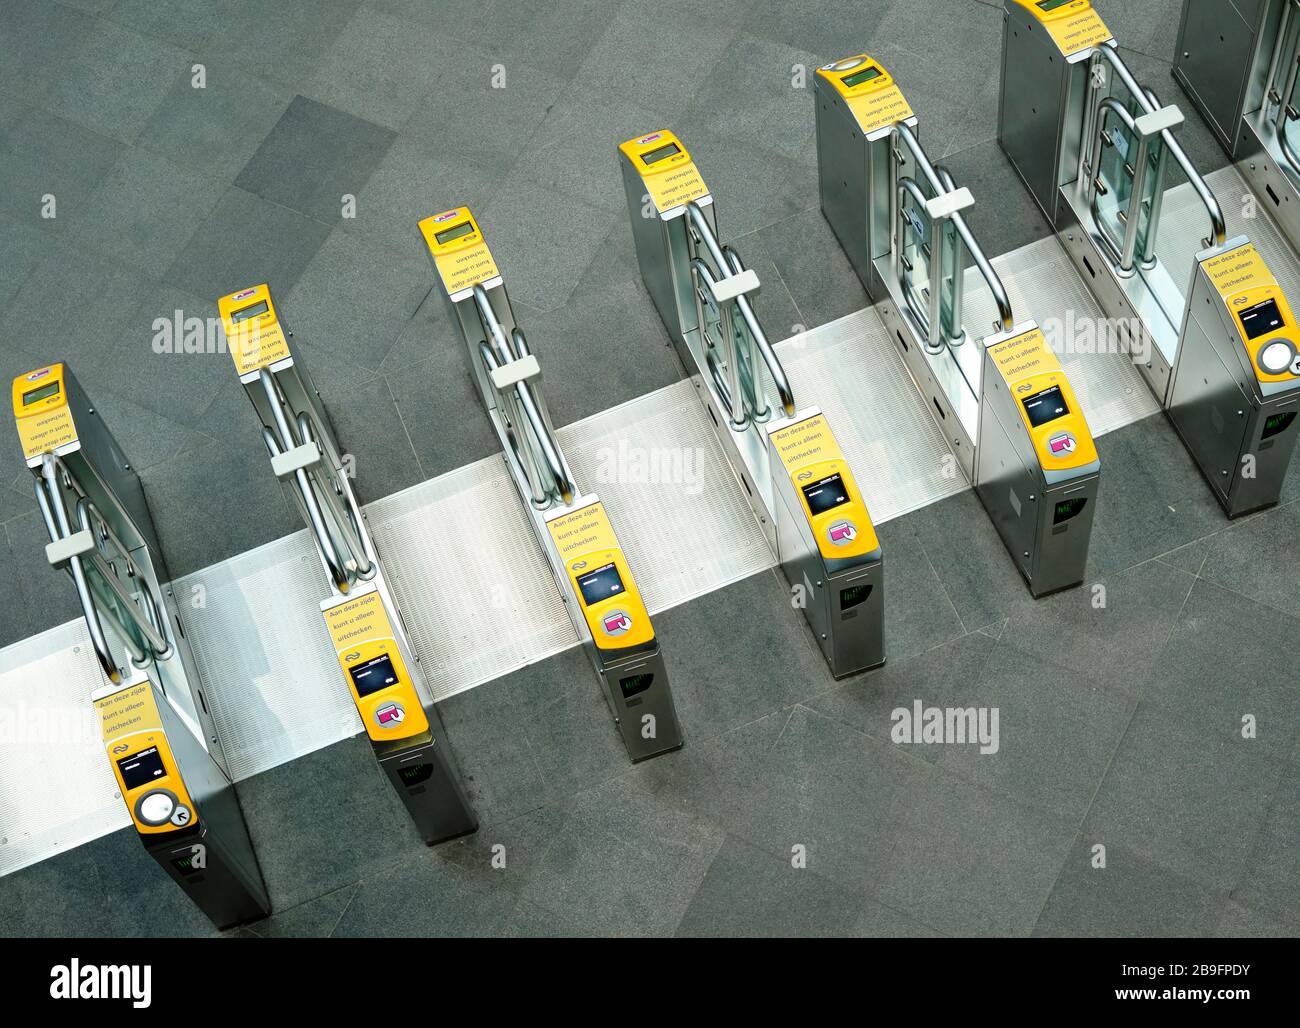 Accesso cancelli dove è possibile eseguire la scansione della carta per raggiungere i mezzi di trasporto pubblico. Foto Stock